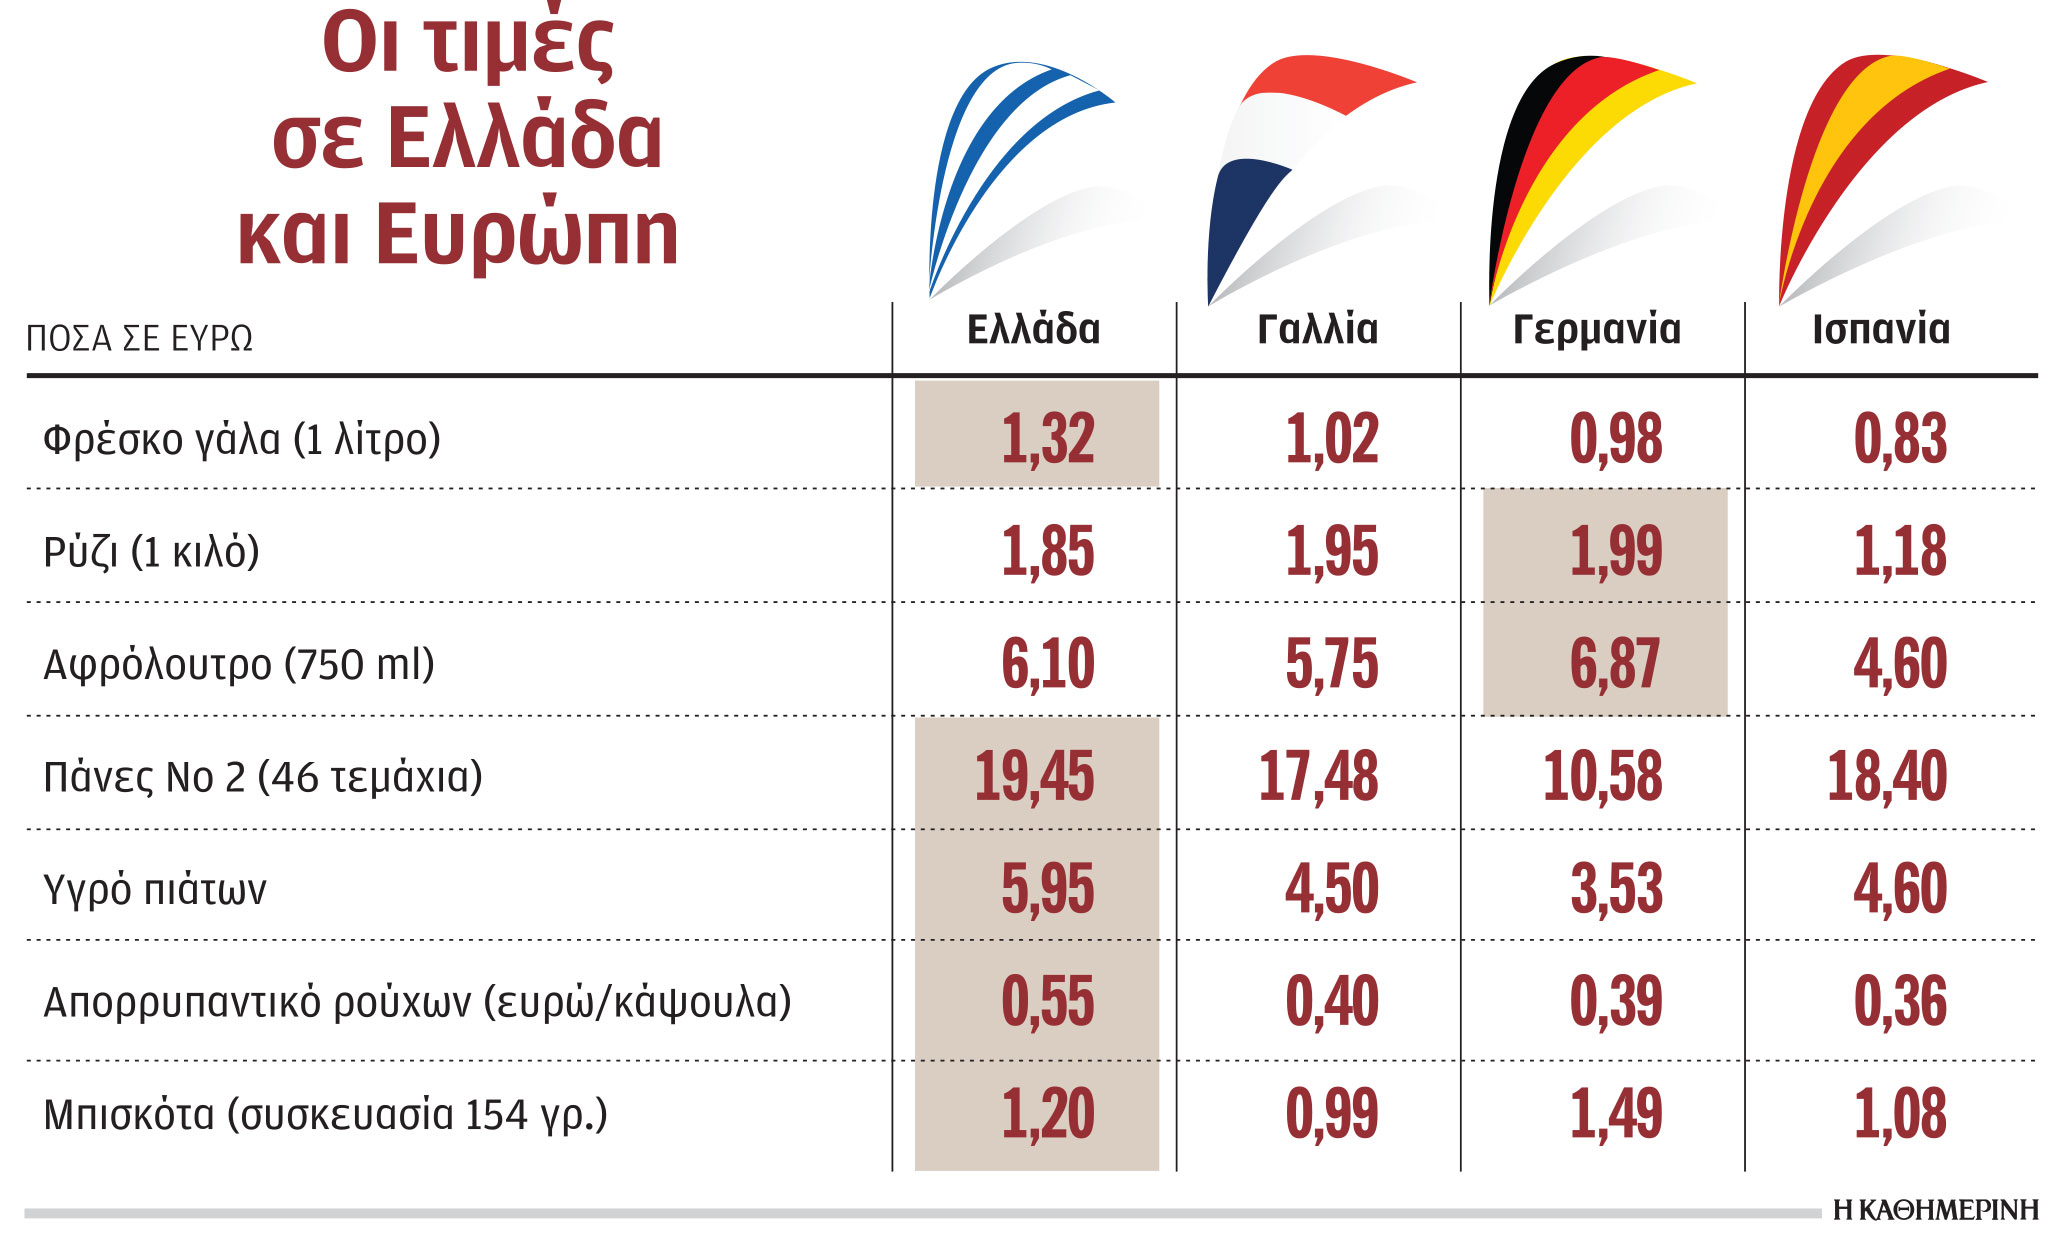 Ελληνική αγορά: Ακριβότερα προϊόντα σε σχέση με την Ευρώπη-1